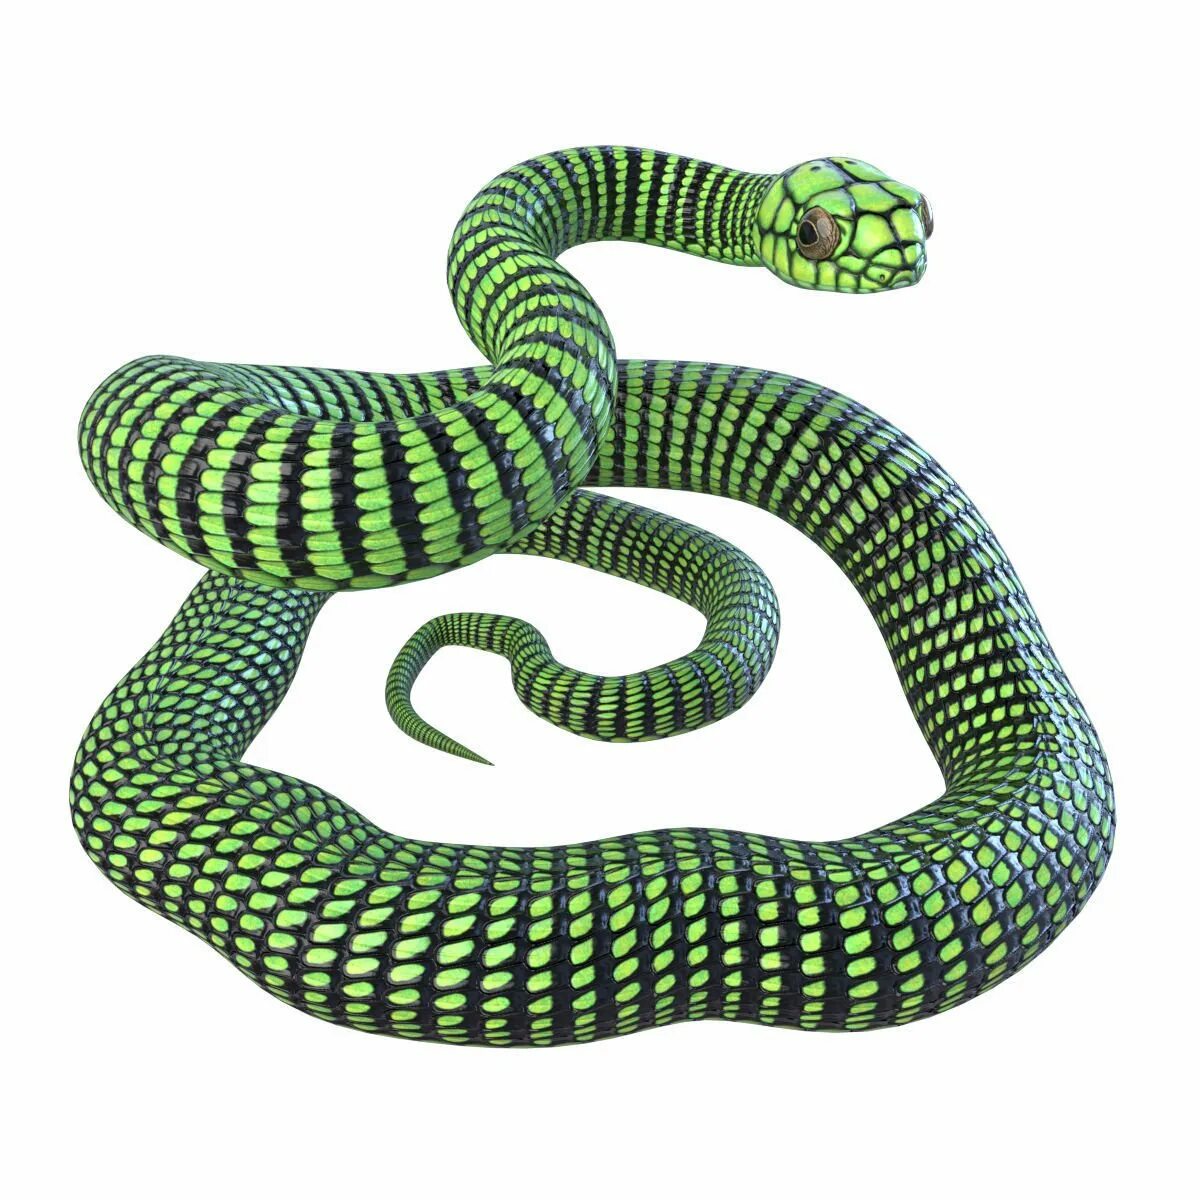 D snake. Бумсланг змея. 3д модель змея Слизерин. 3d model змея Aspid. Атака бумсланг змея.